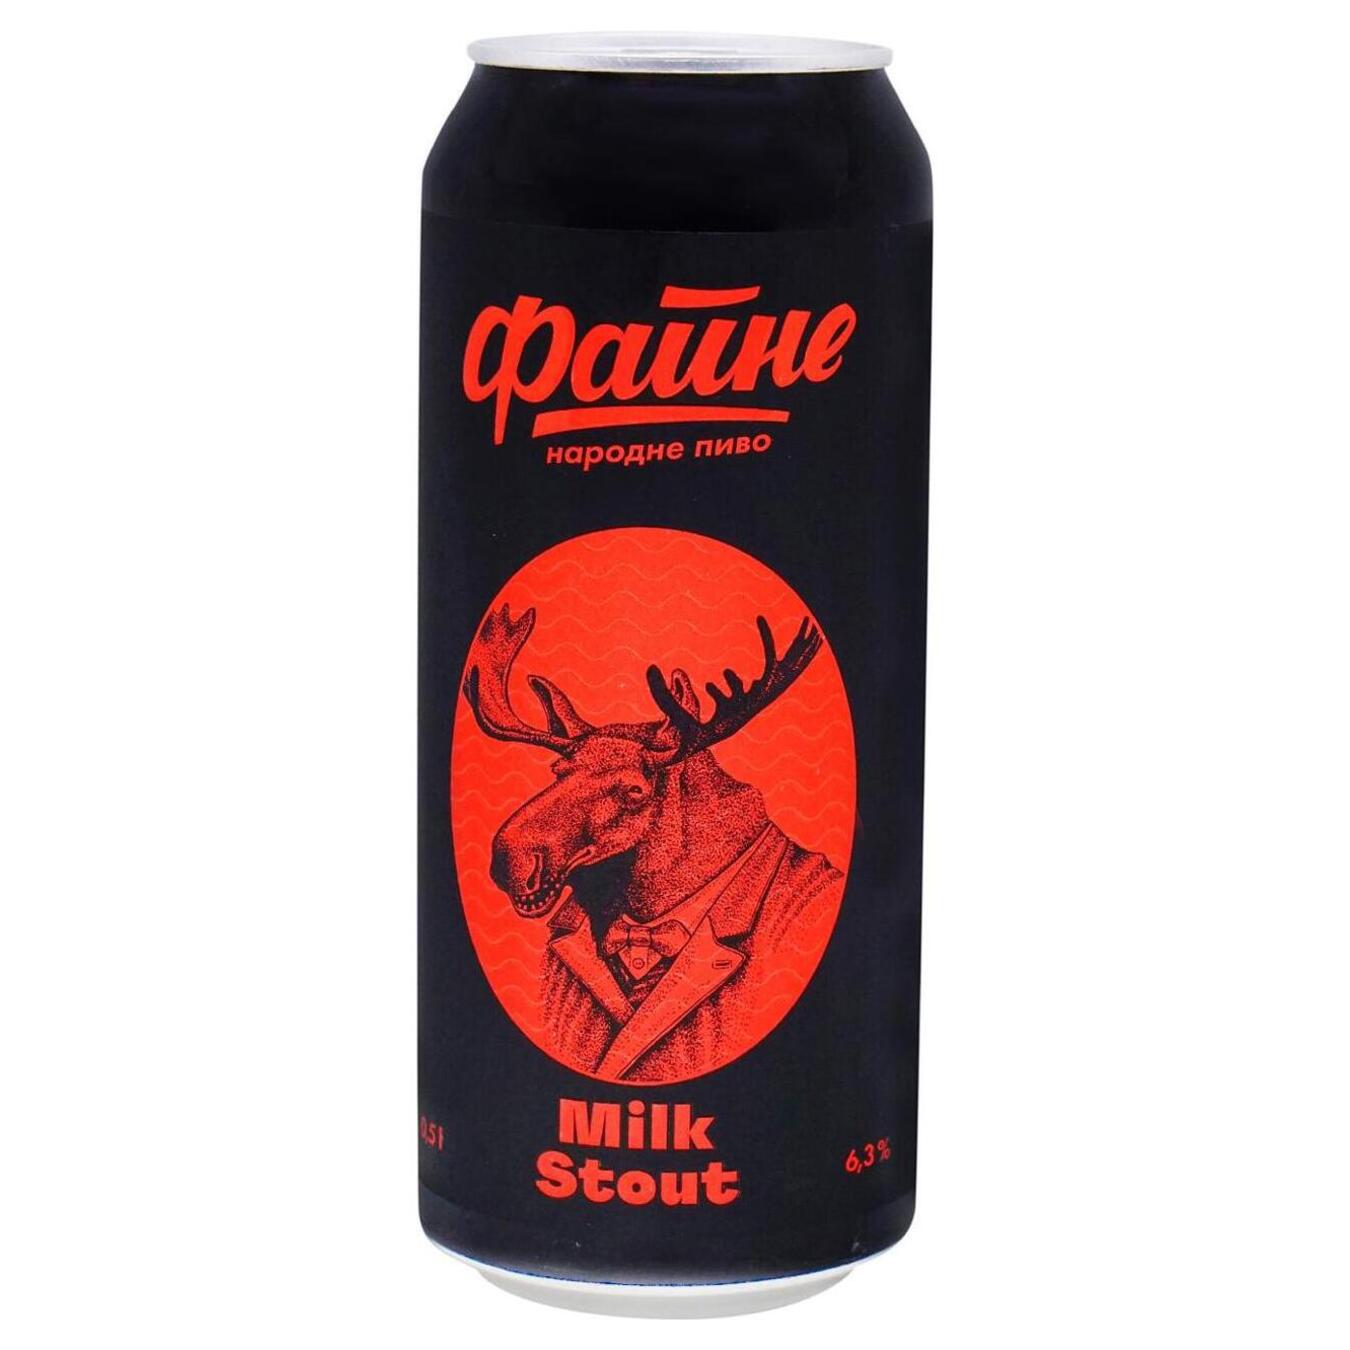 Fine dark beer Milk Stout 6.3% 0.5l can